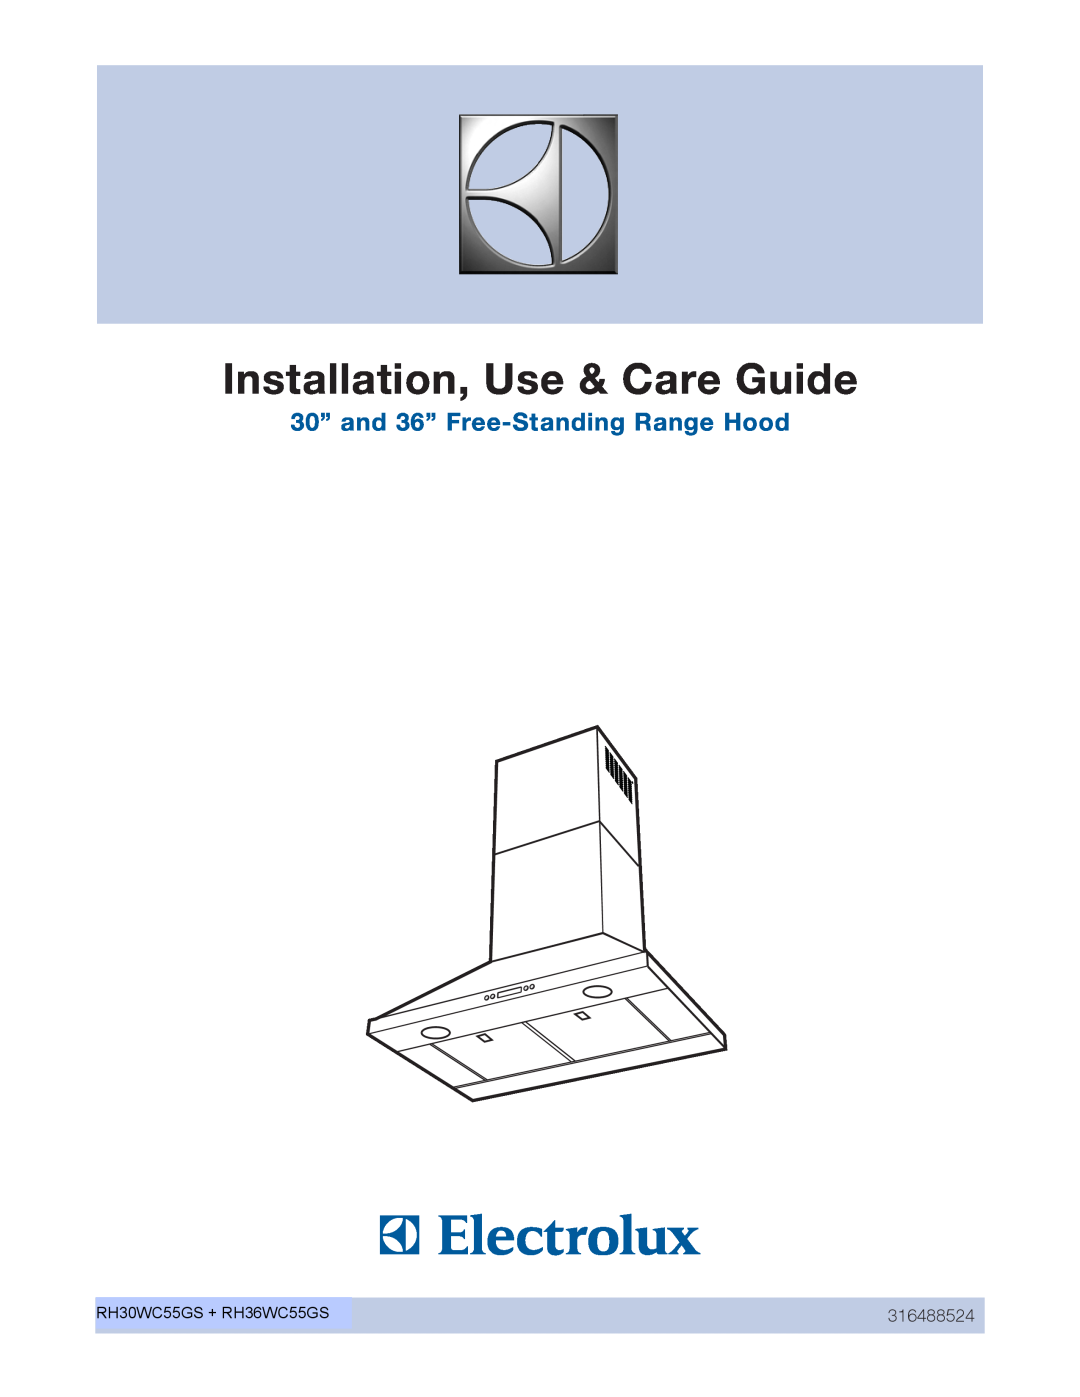 Frigidaire RH36WC55GS, RH30WC55GS, EI30WC55GS manual Installation, Use & Care Guide, Guia de Instalación, Uso y Cuidado 